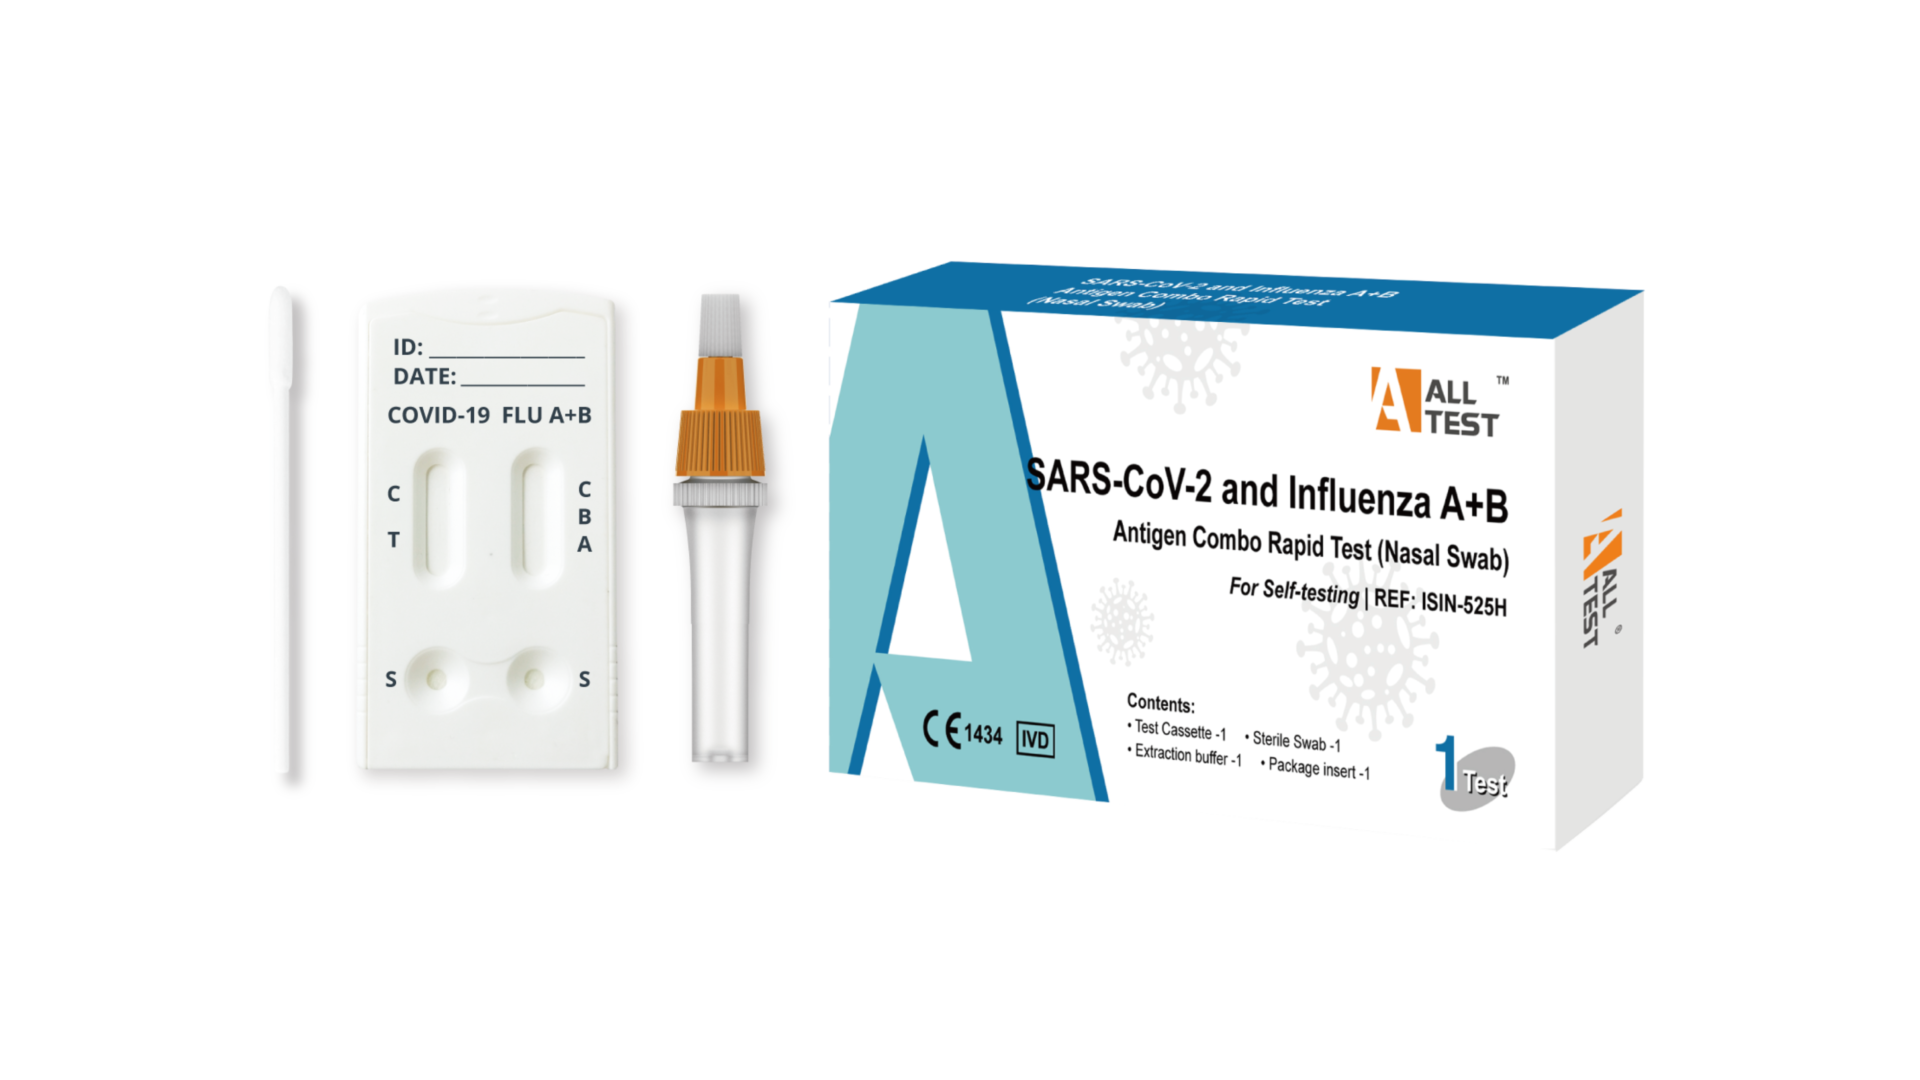 SARS-CoV-2 and Influenza A+B